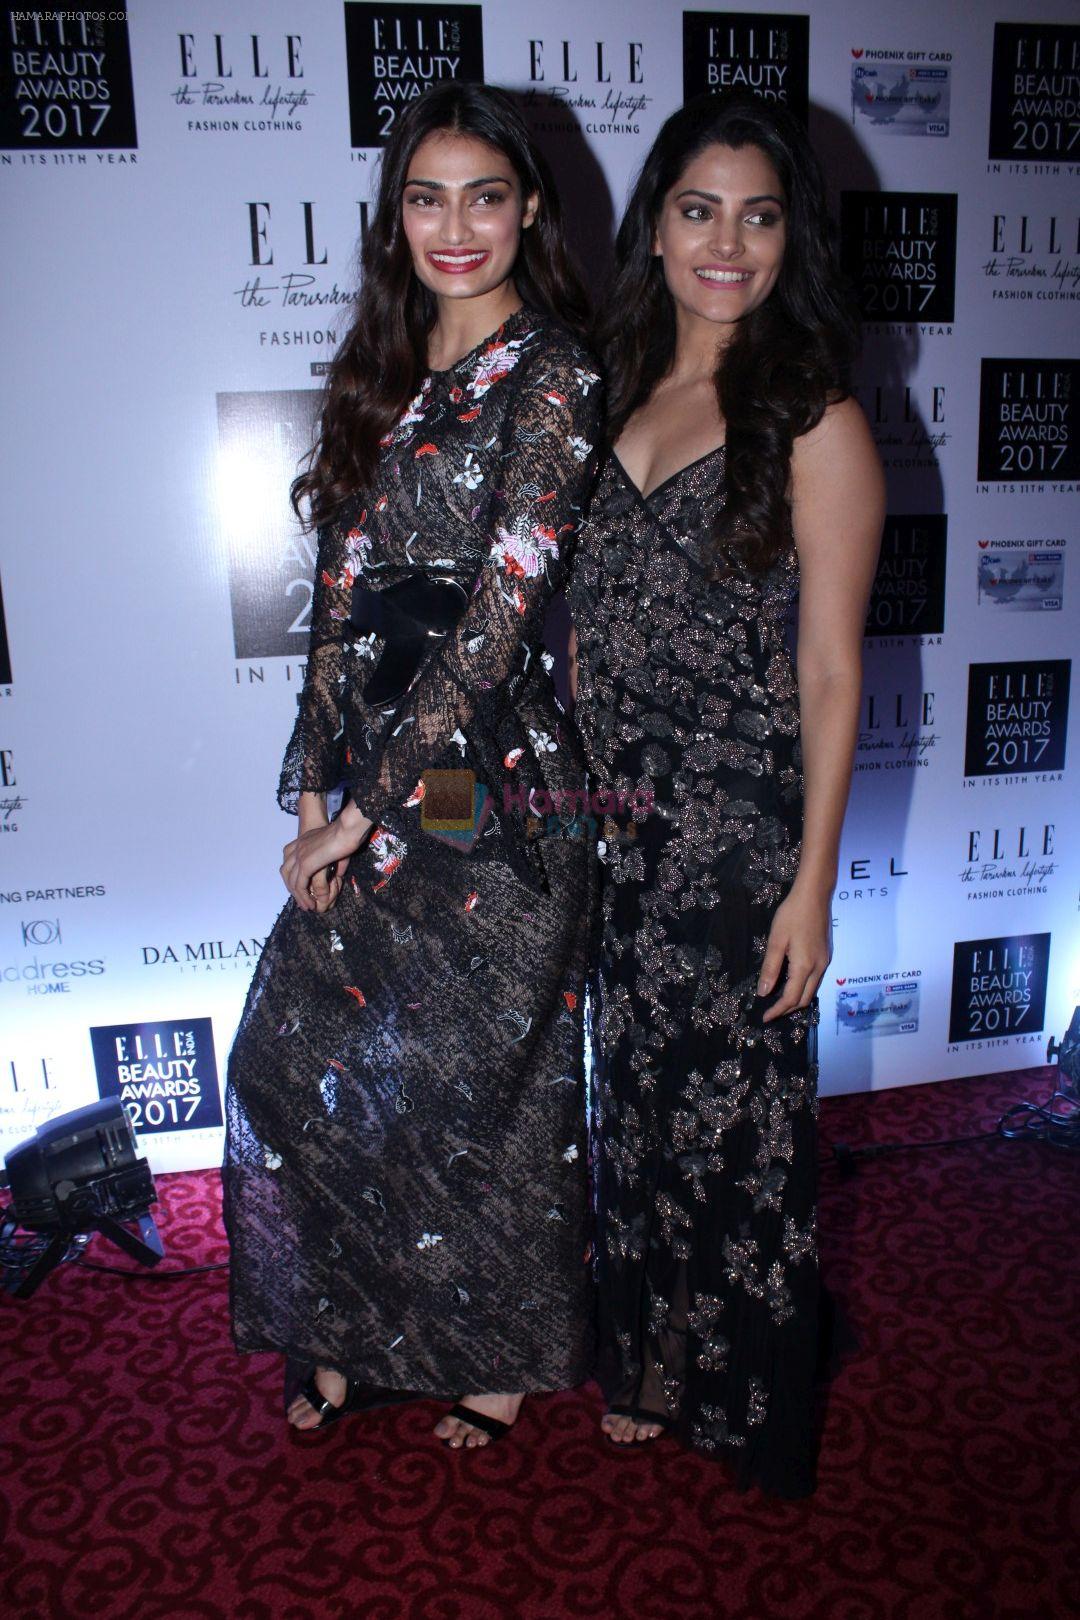 Athiya Shetty, Saiyami Kher at Elle India Beauty Awards 2017 on 4th Oct 2017